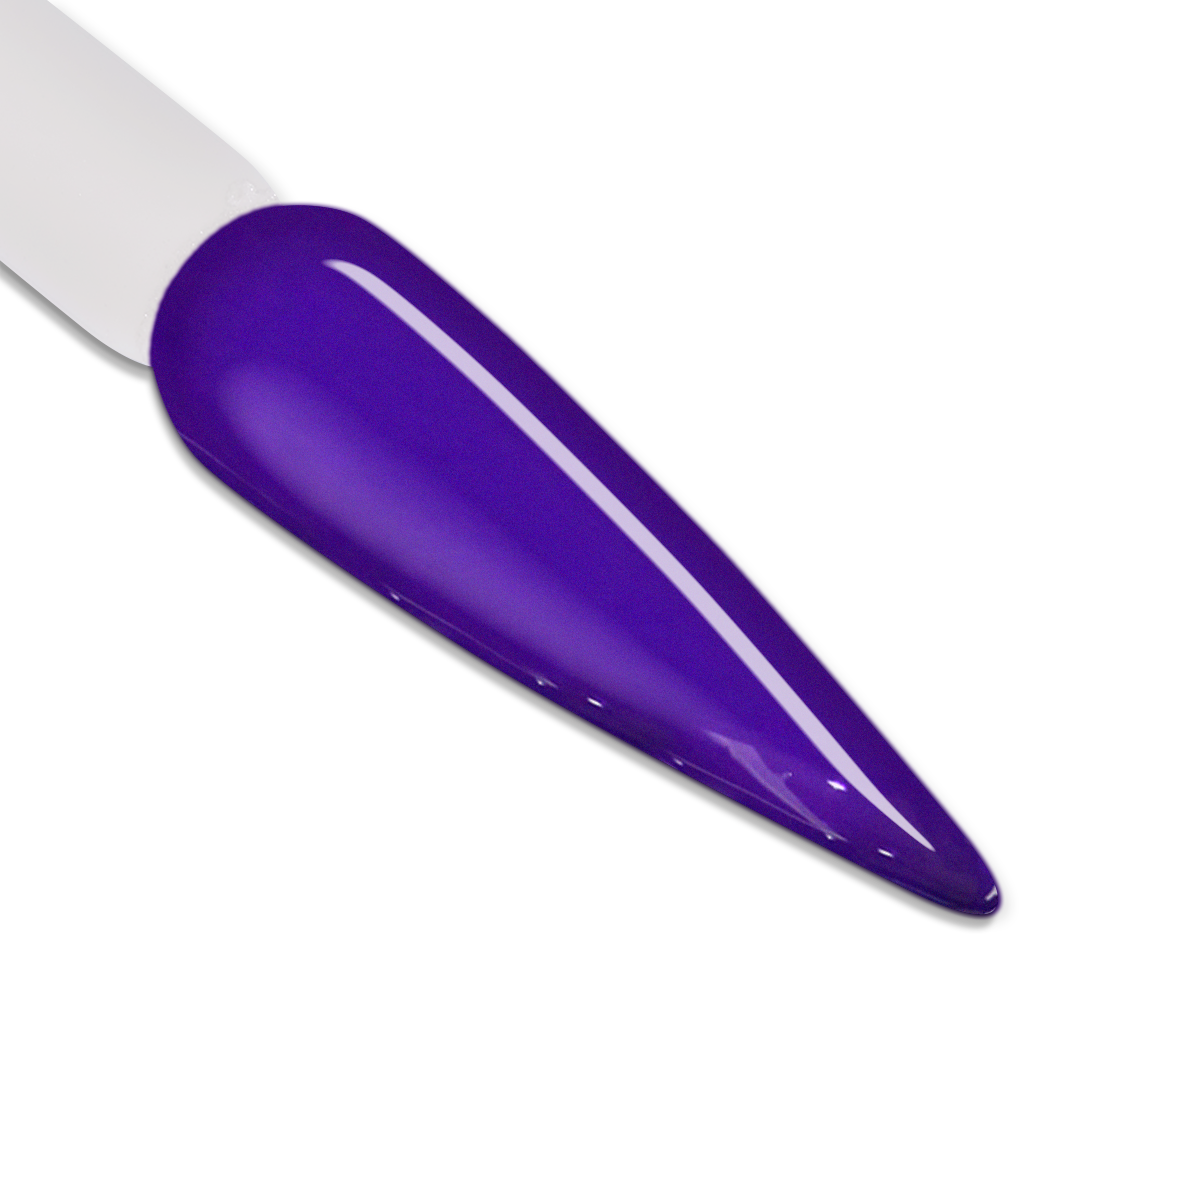 LB Jelly Gel Color - JG17 Violet